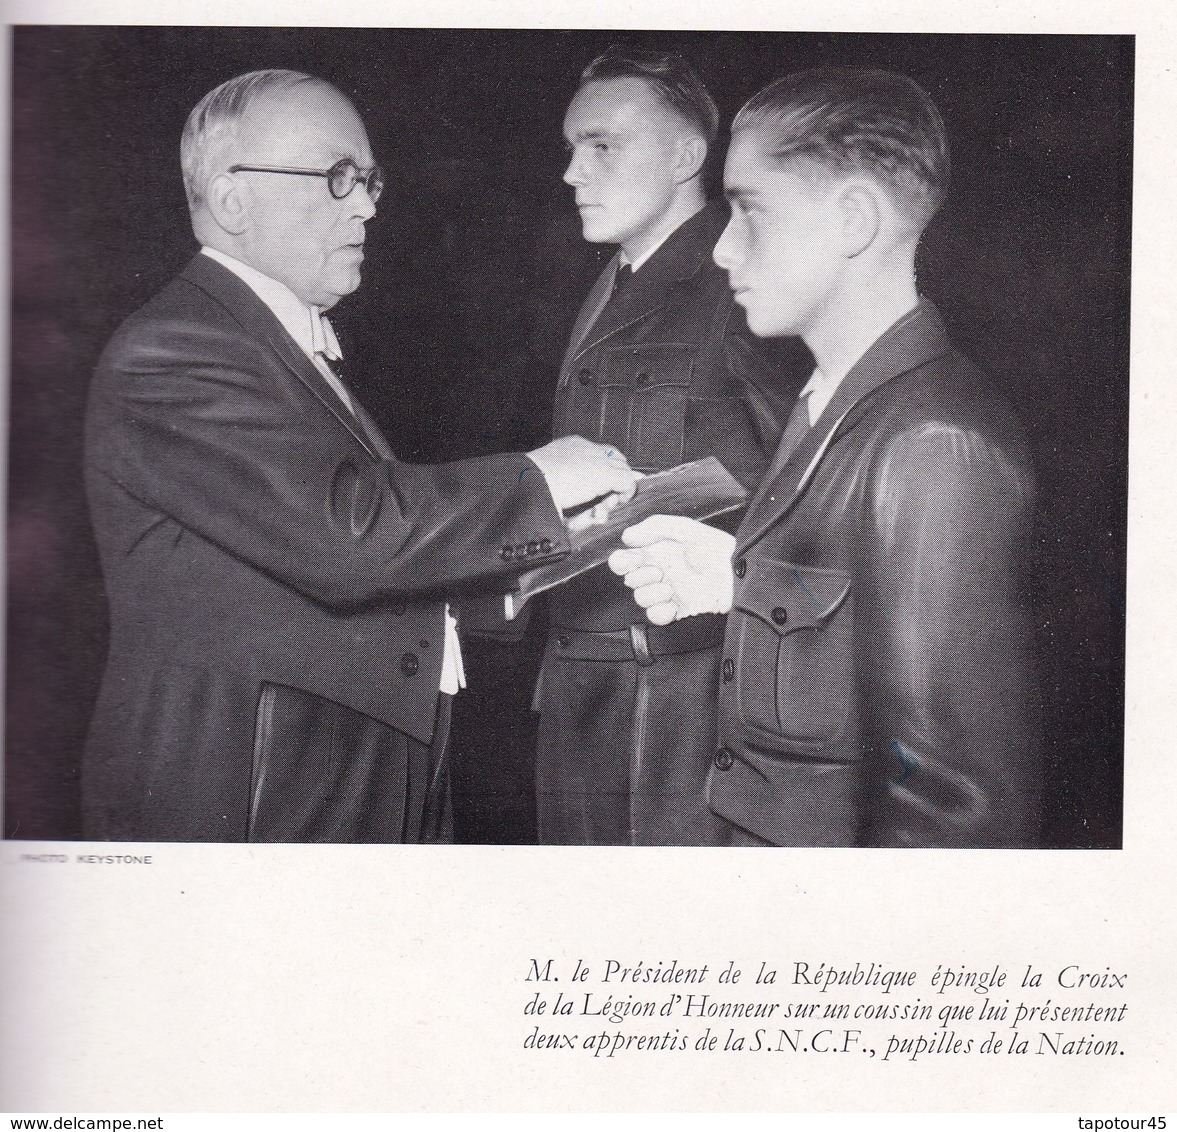 Fascicule cartonné A4 SNCF 1951 remise de la Légion d'Honneur (12 pages avec les discours)